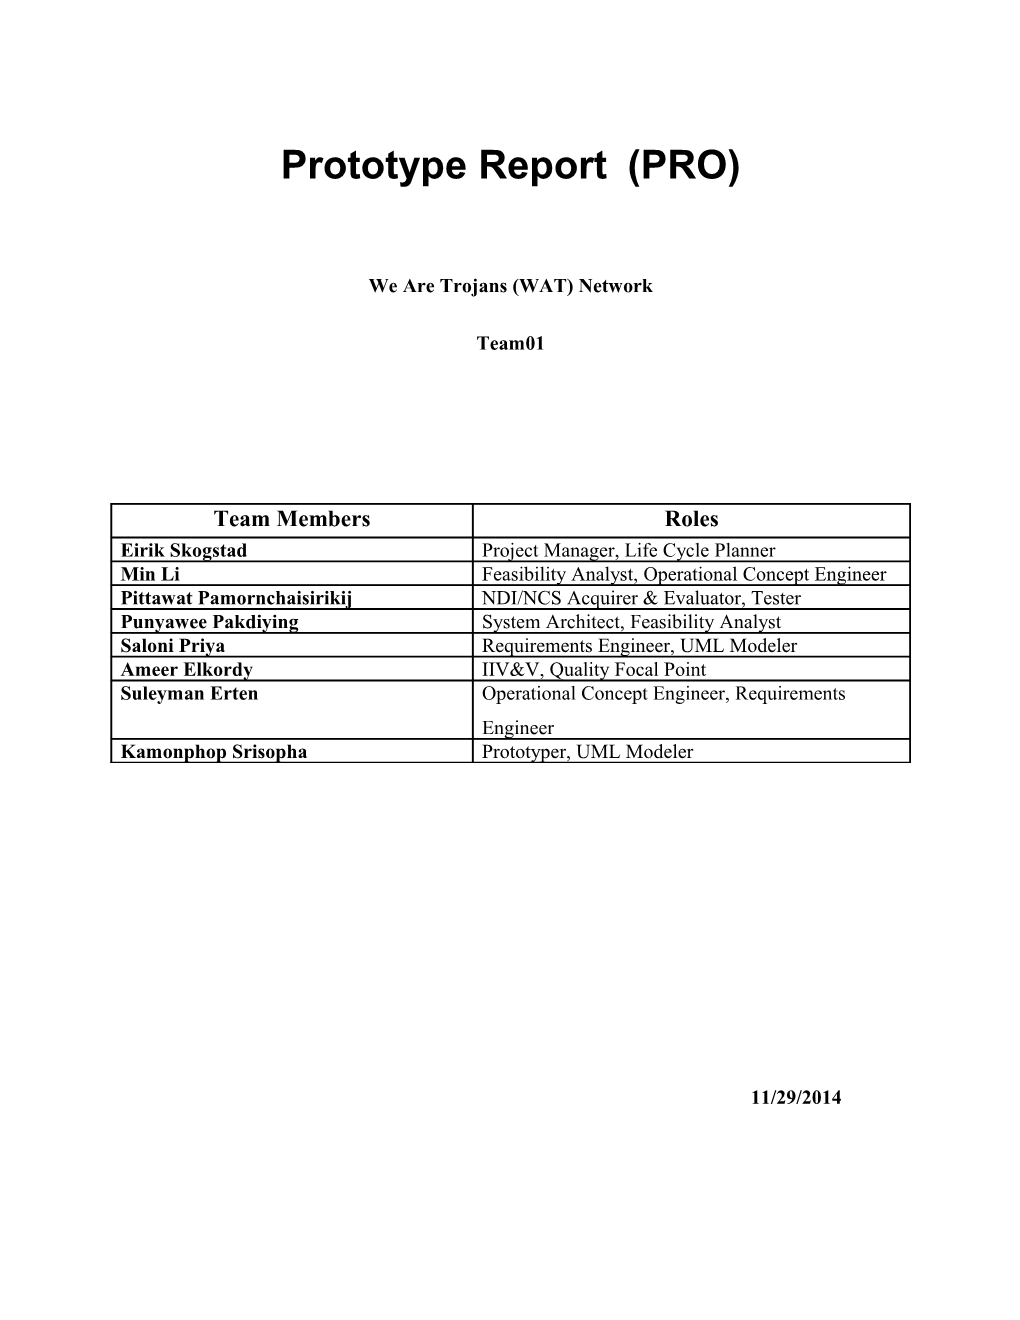 Prototype Report (PRO) Version 2.5